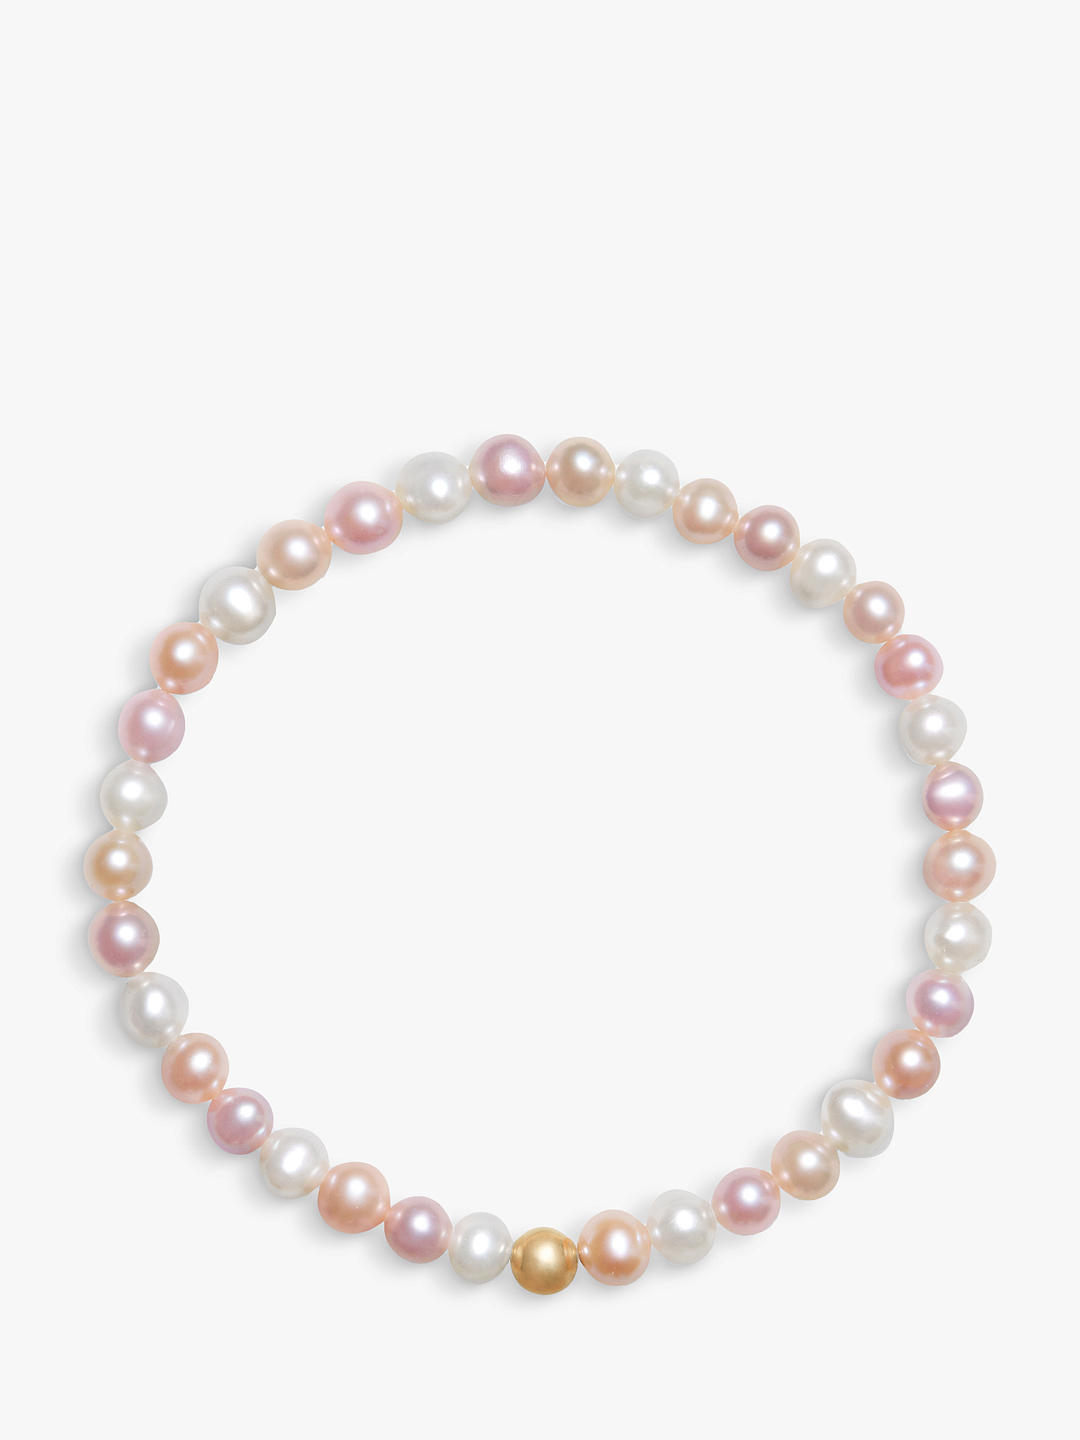 A B Davis 9ct Gold Pearl Bracelet, Pink